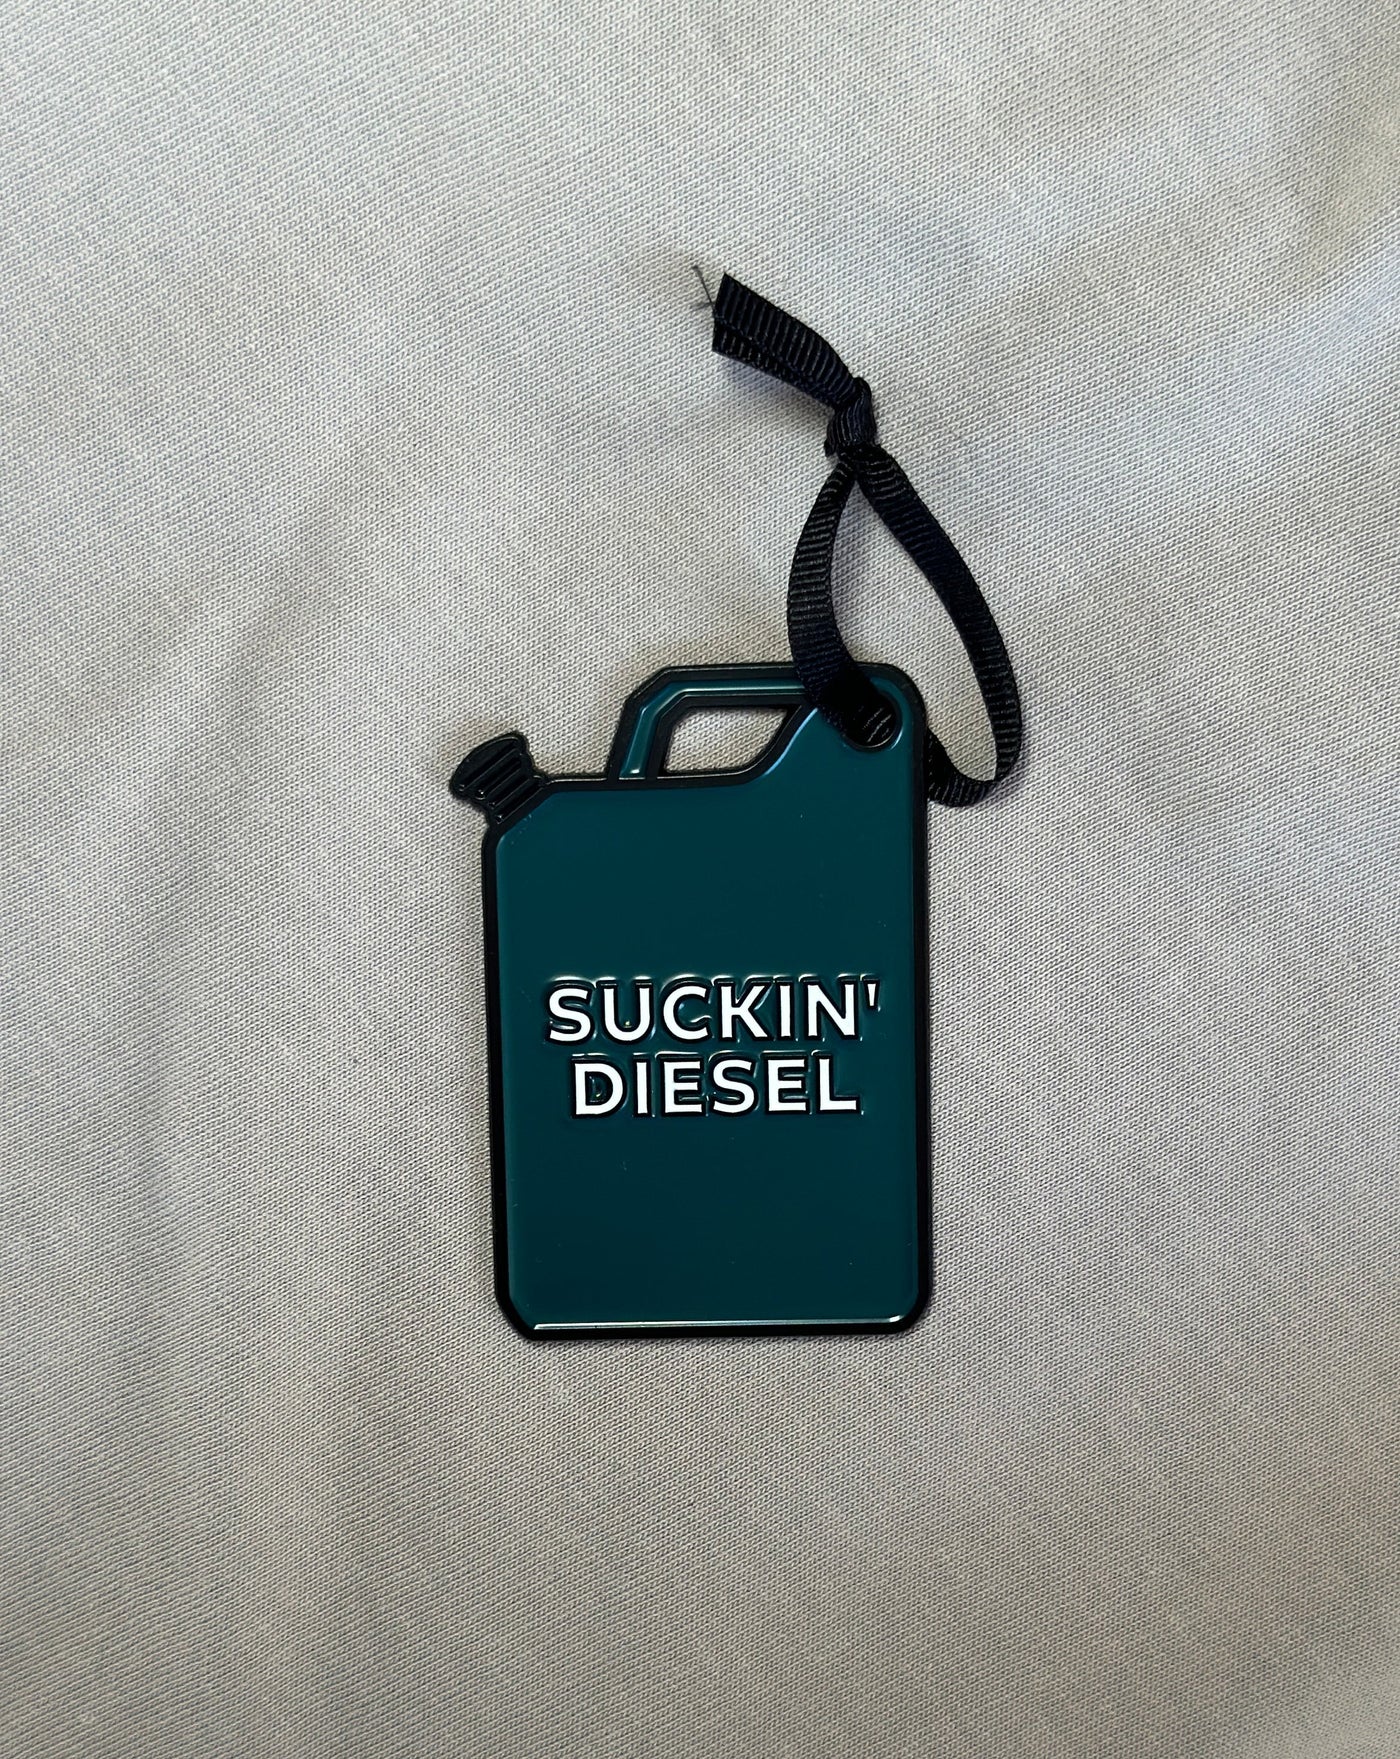 Suckin' Diesel | Born and Bred Decoration